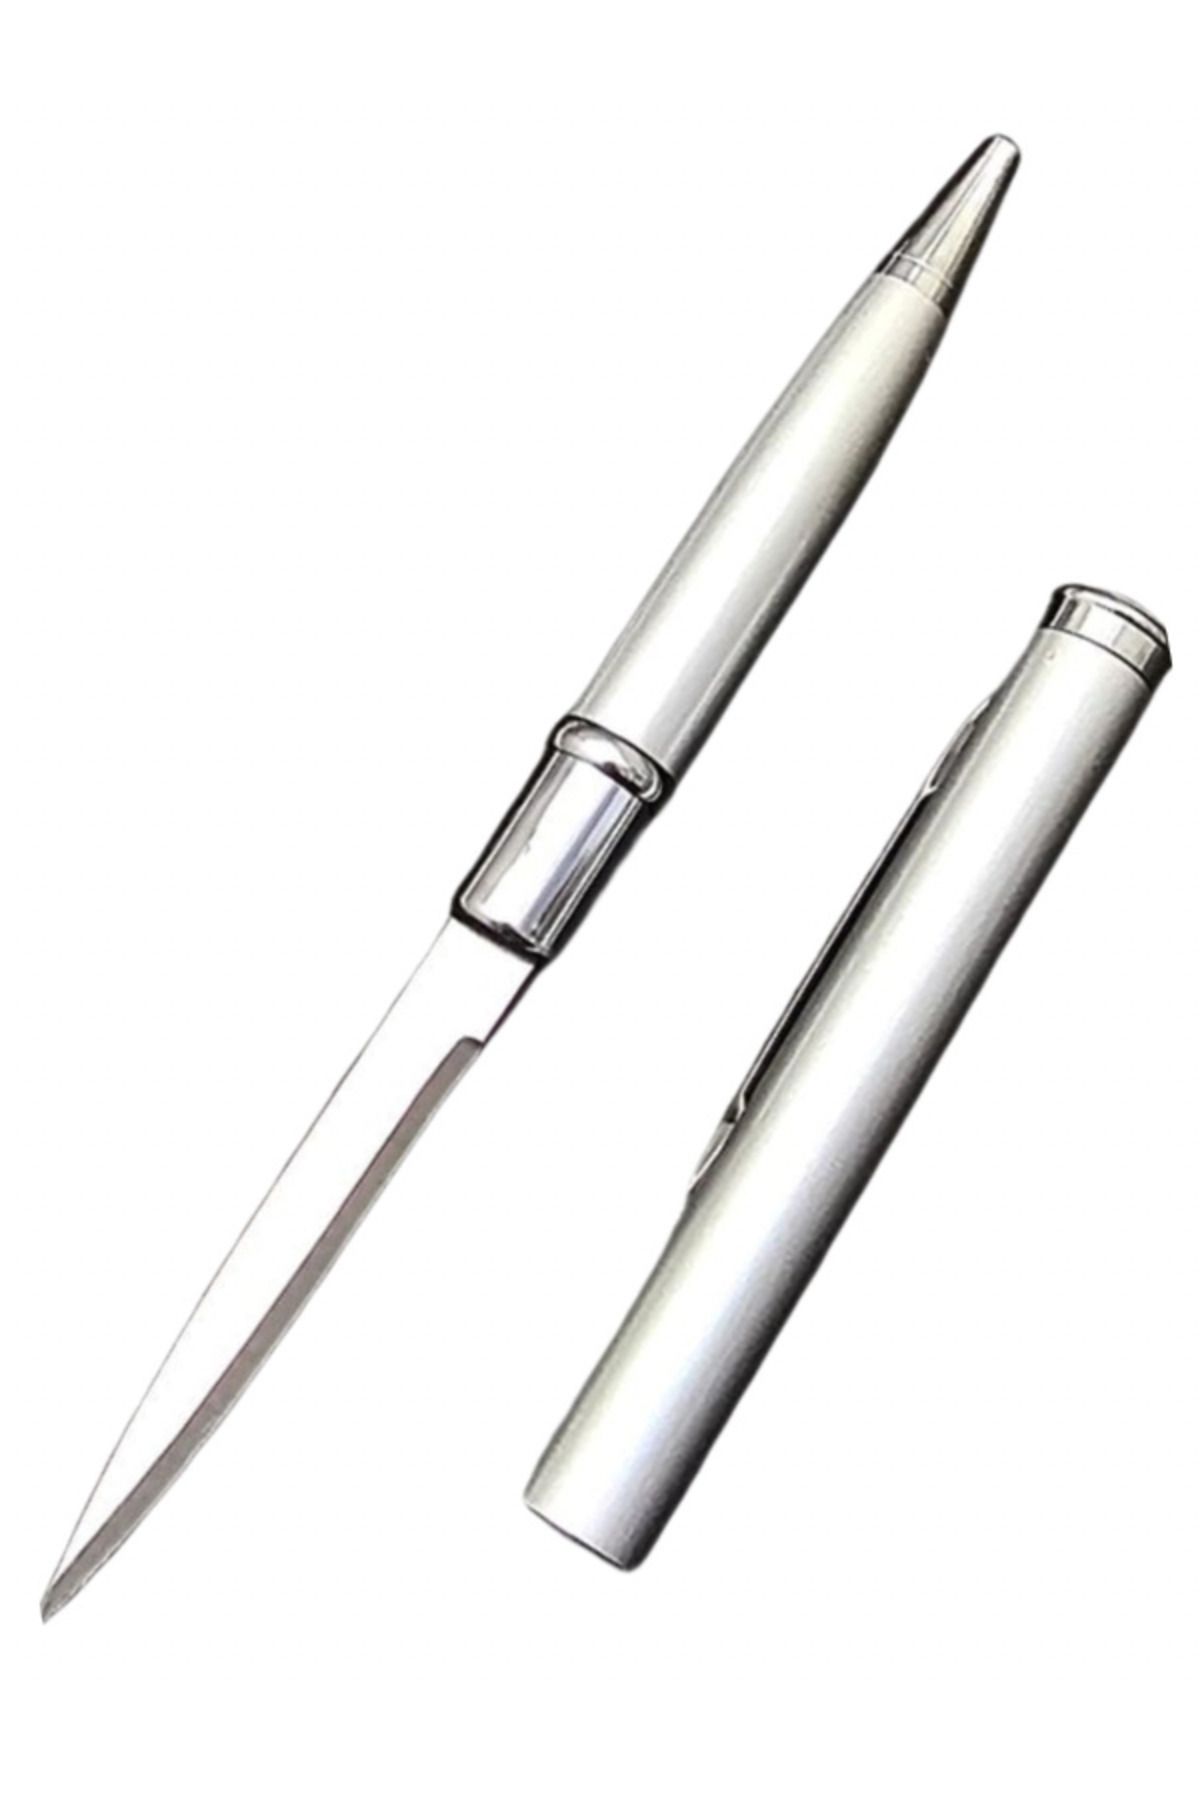 KnivesAndWeapons Kalem Bıçak Gizli Bıçak Kalem Görünümlü Gümüş Lüks Kalem Standart Kalem Boyutu Taktikal